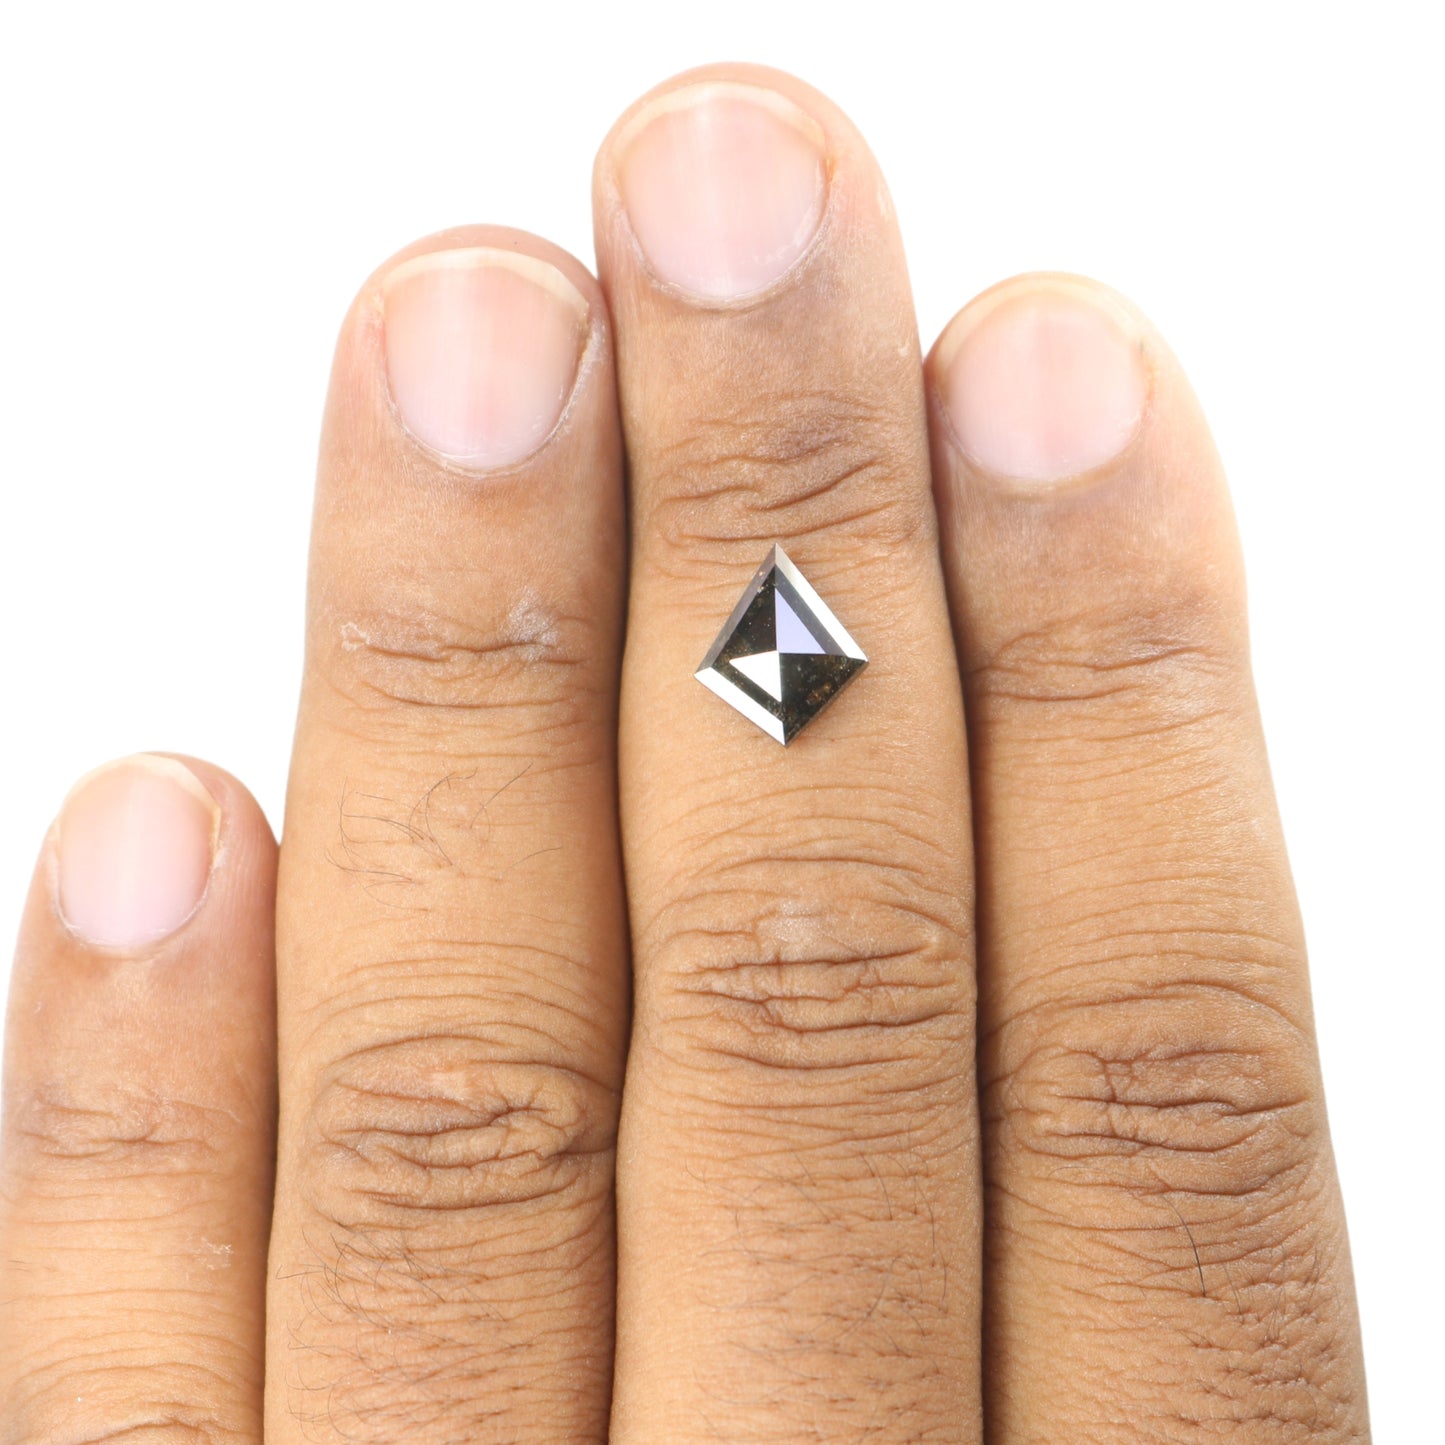 1.95 CT Kite Shape Fancy Salt And Pepper Diamond For Engagement Ring